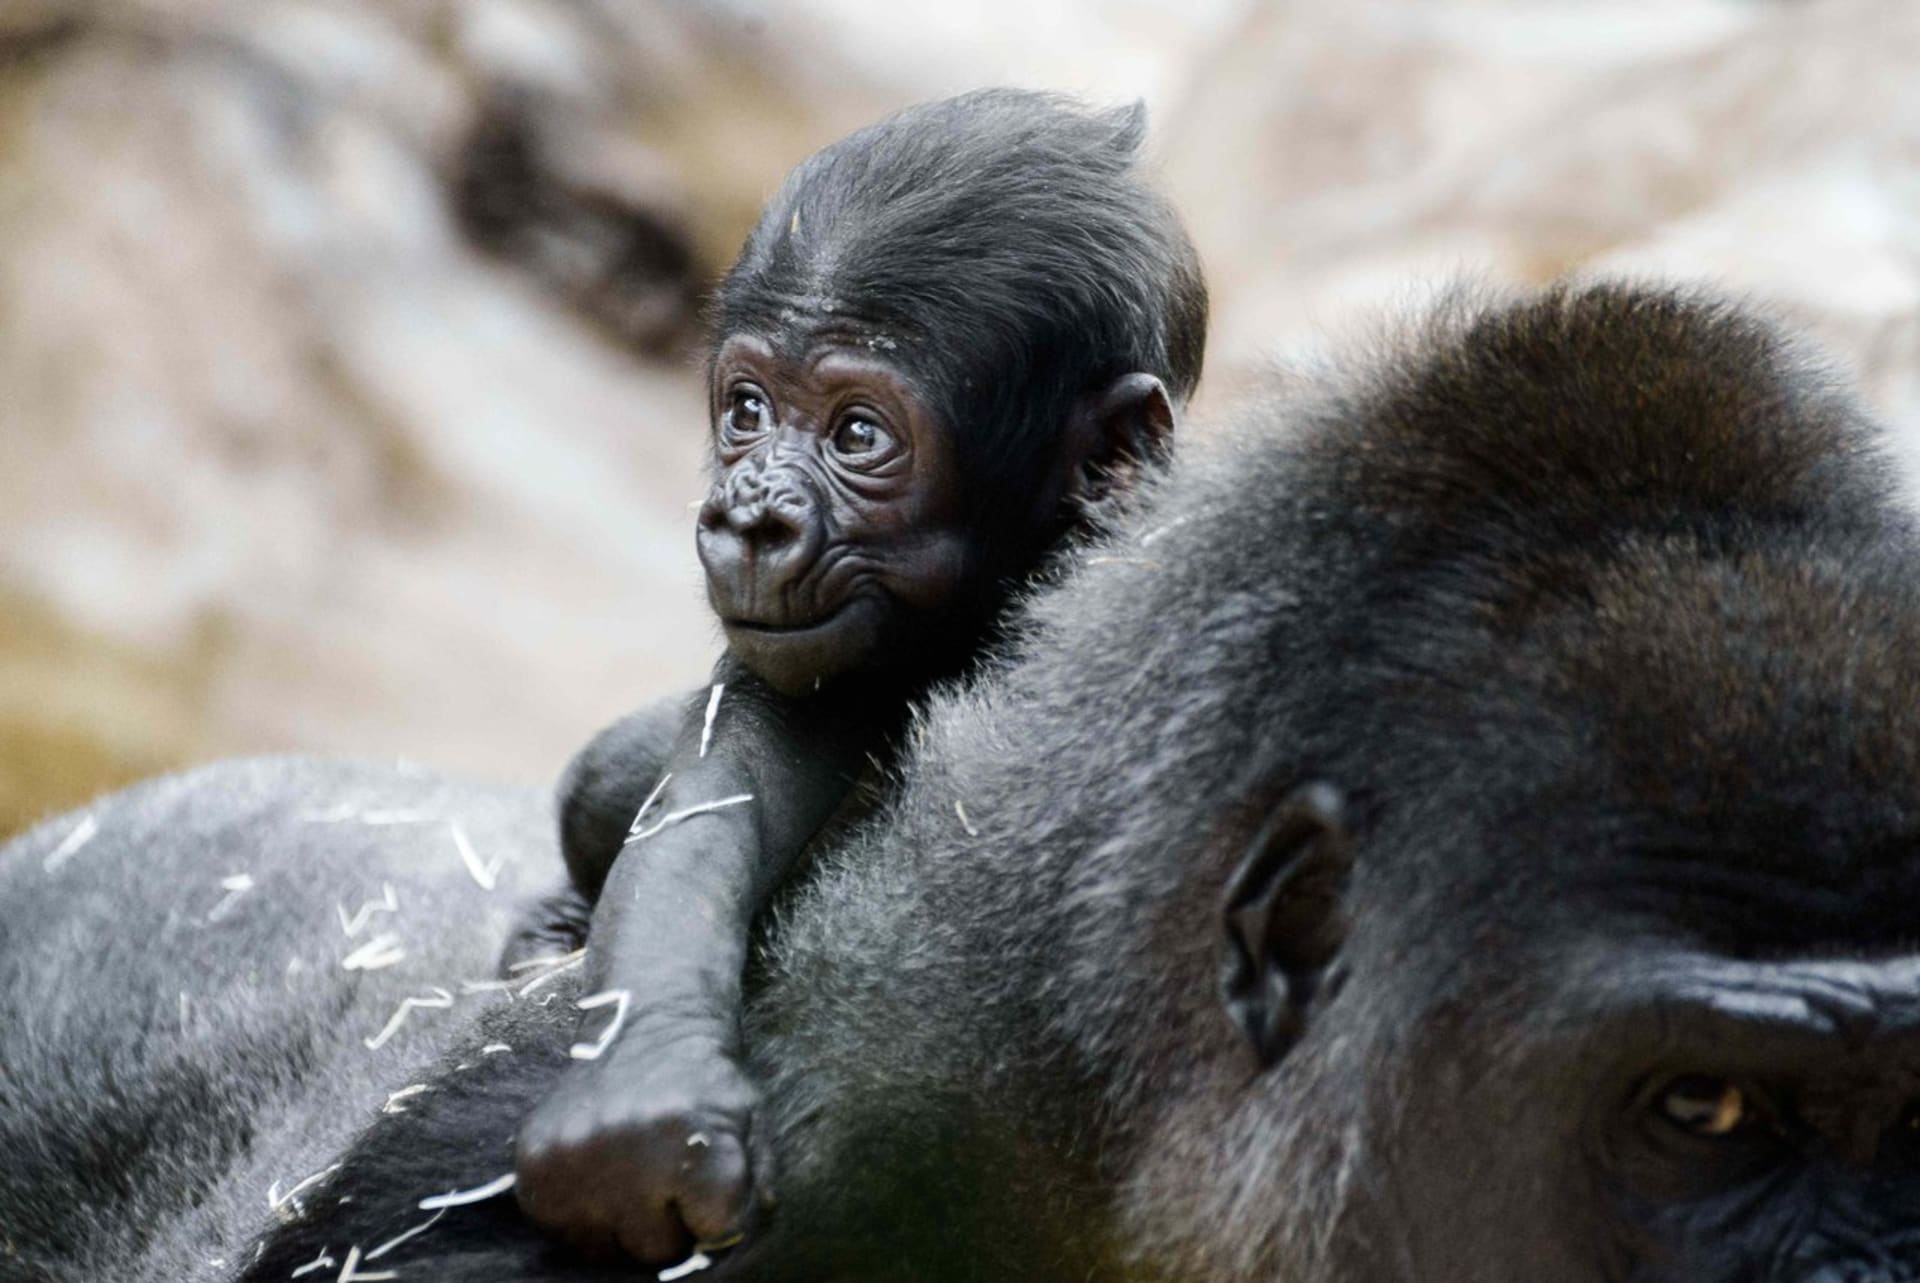 : Mládě samice gorily nížinné Shindy je sameček